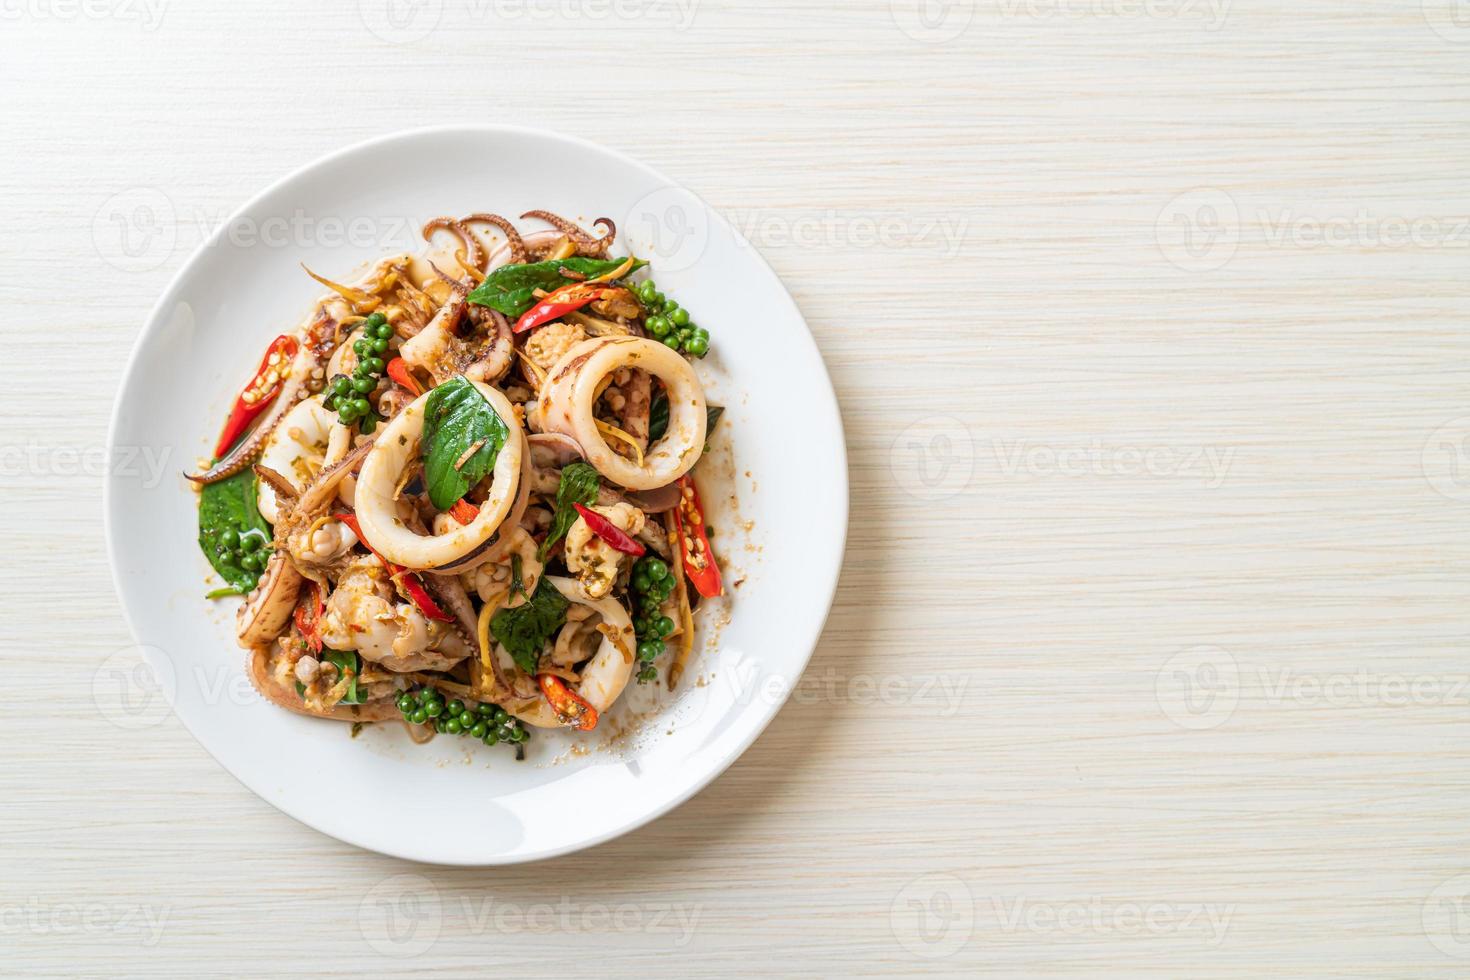 uppstekt helig basilika med bläckfisk eller bläckfisk och ört - asiatisk matstil foto